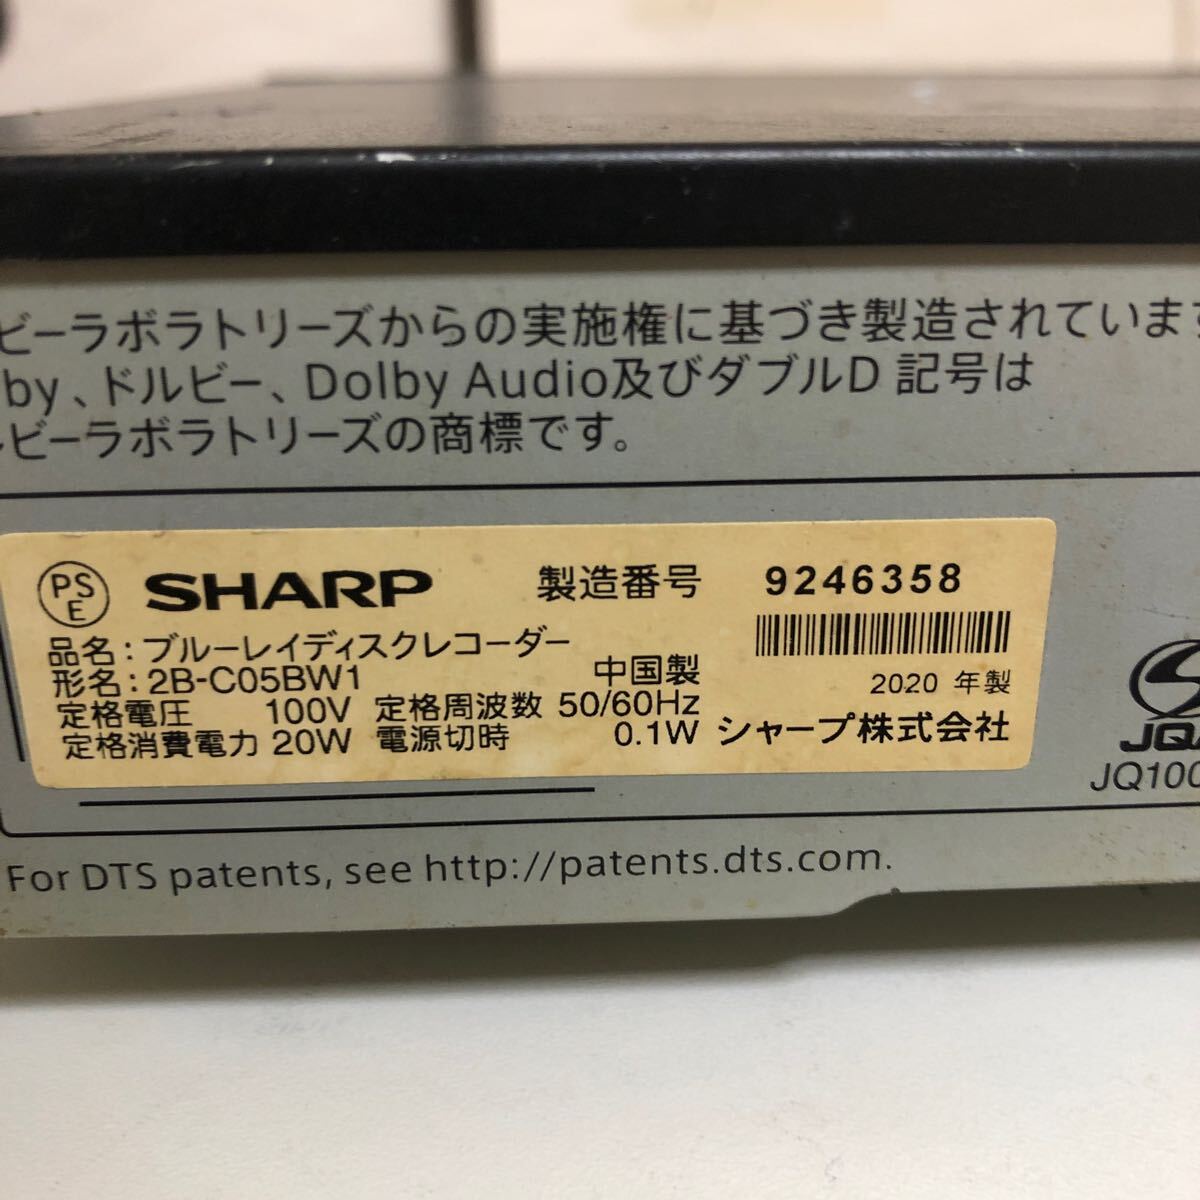 SHARP sharp AQUOS 2B-C05BW1 HDD/BD магнитофон 3D соответствует товар 2020 год производства B-CAS карта имеется 